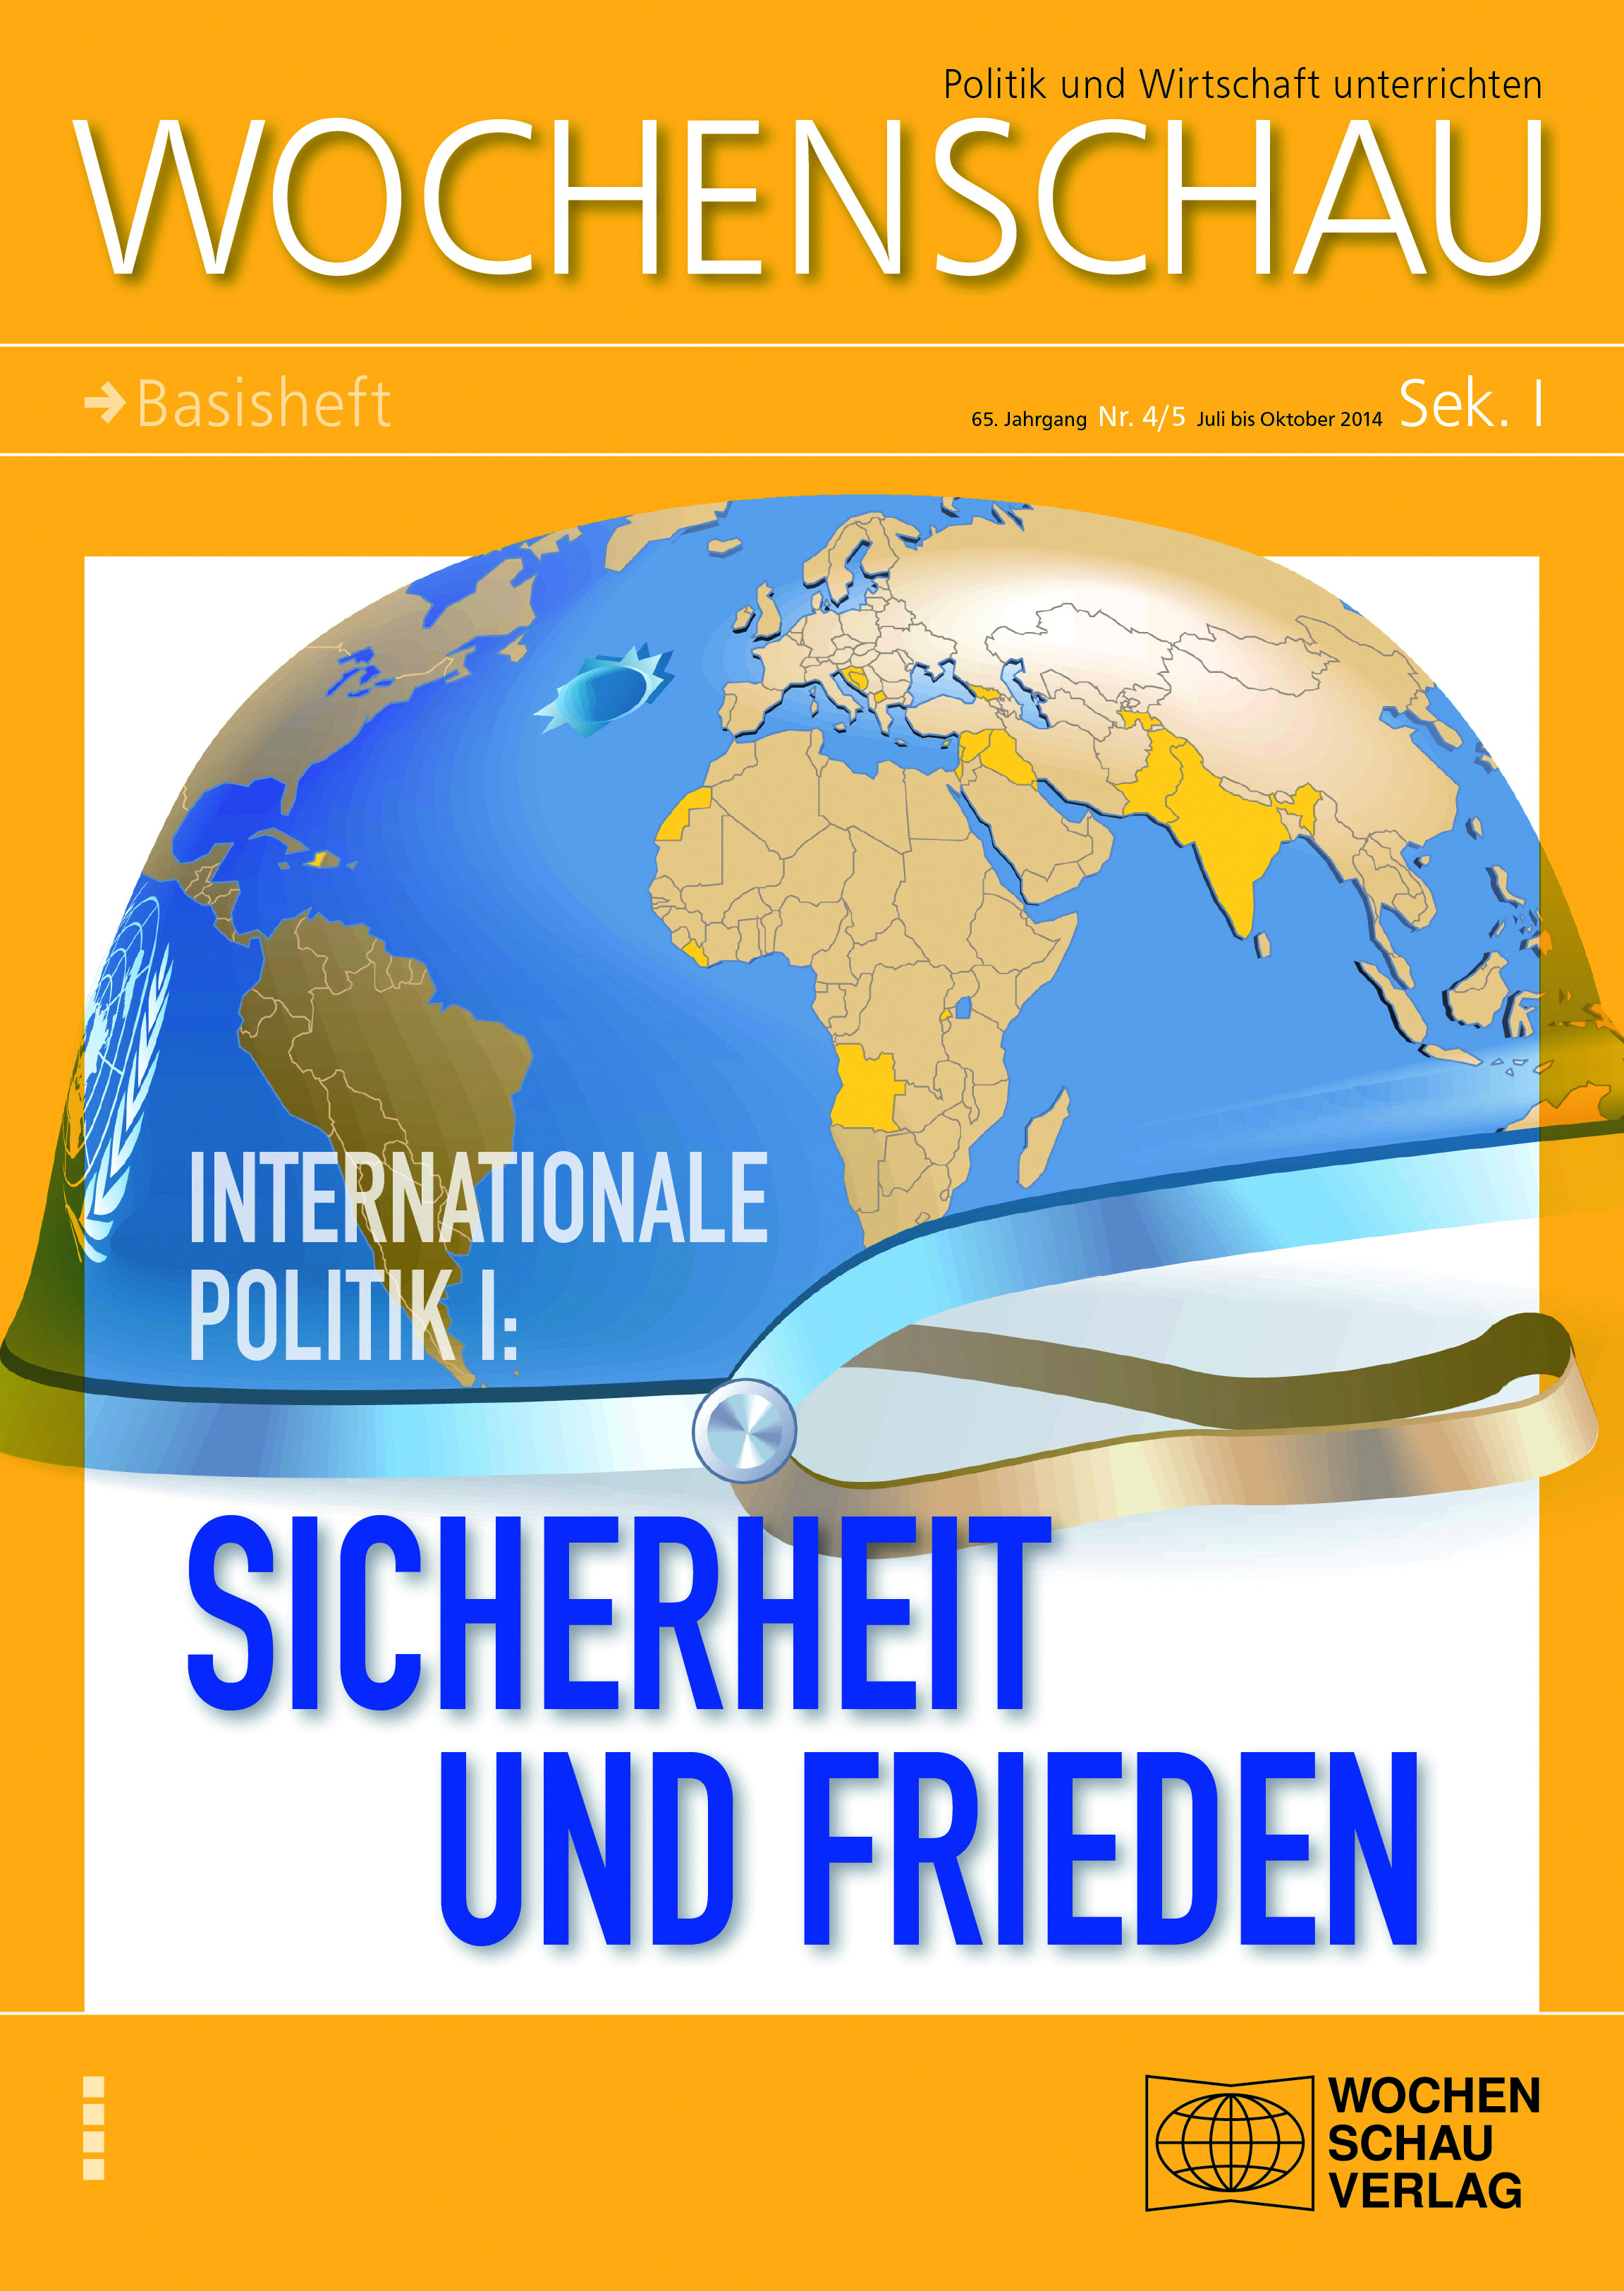 Titelbild der Publikation Sicherheit und Frieden aus dem Wochenschau-Verlag